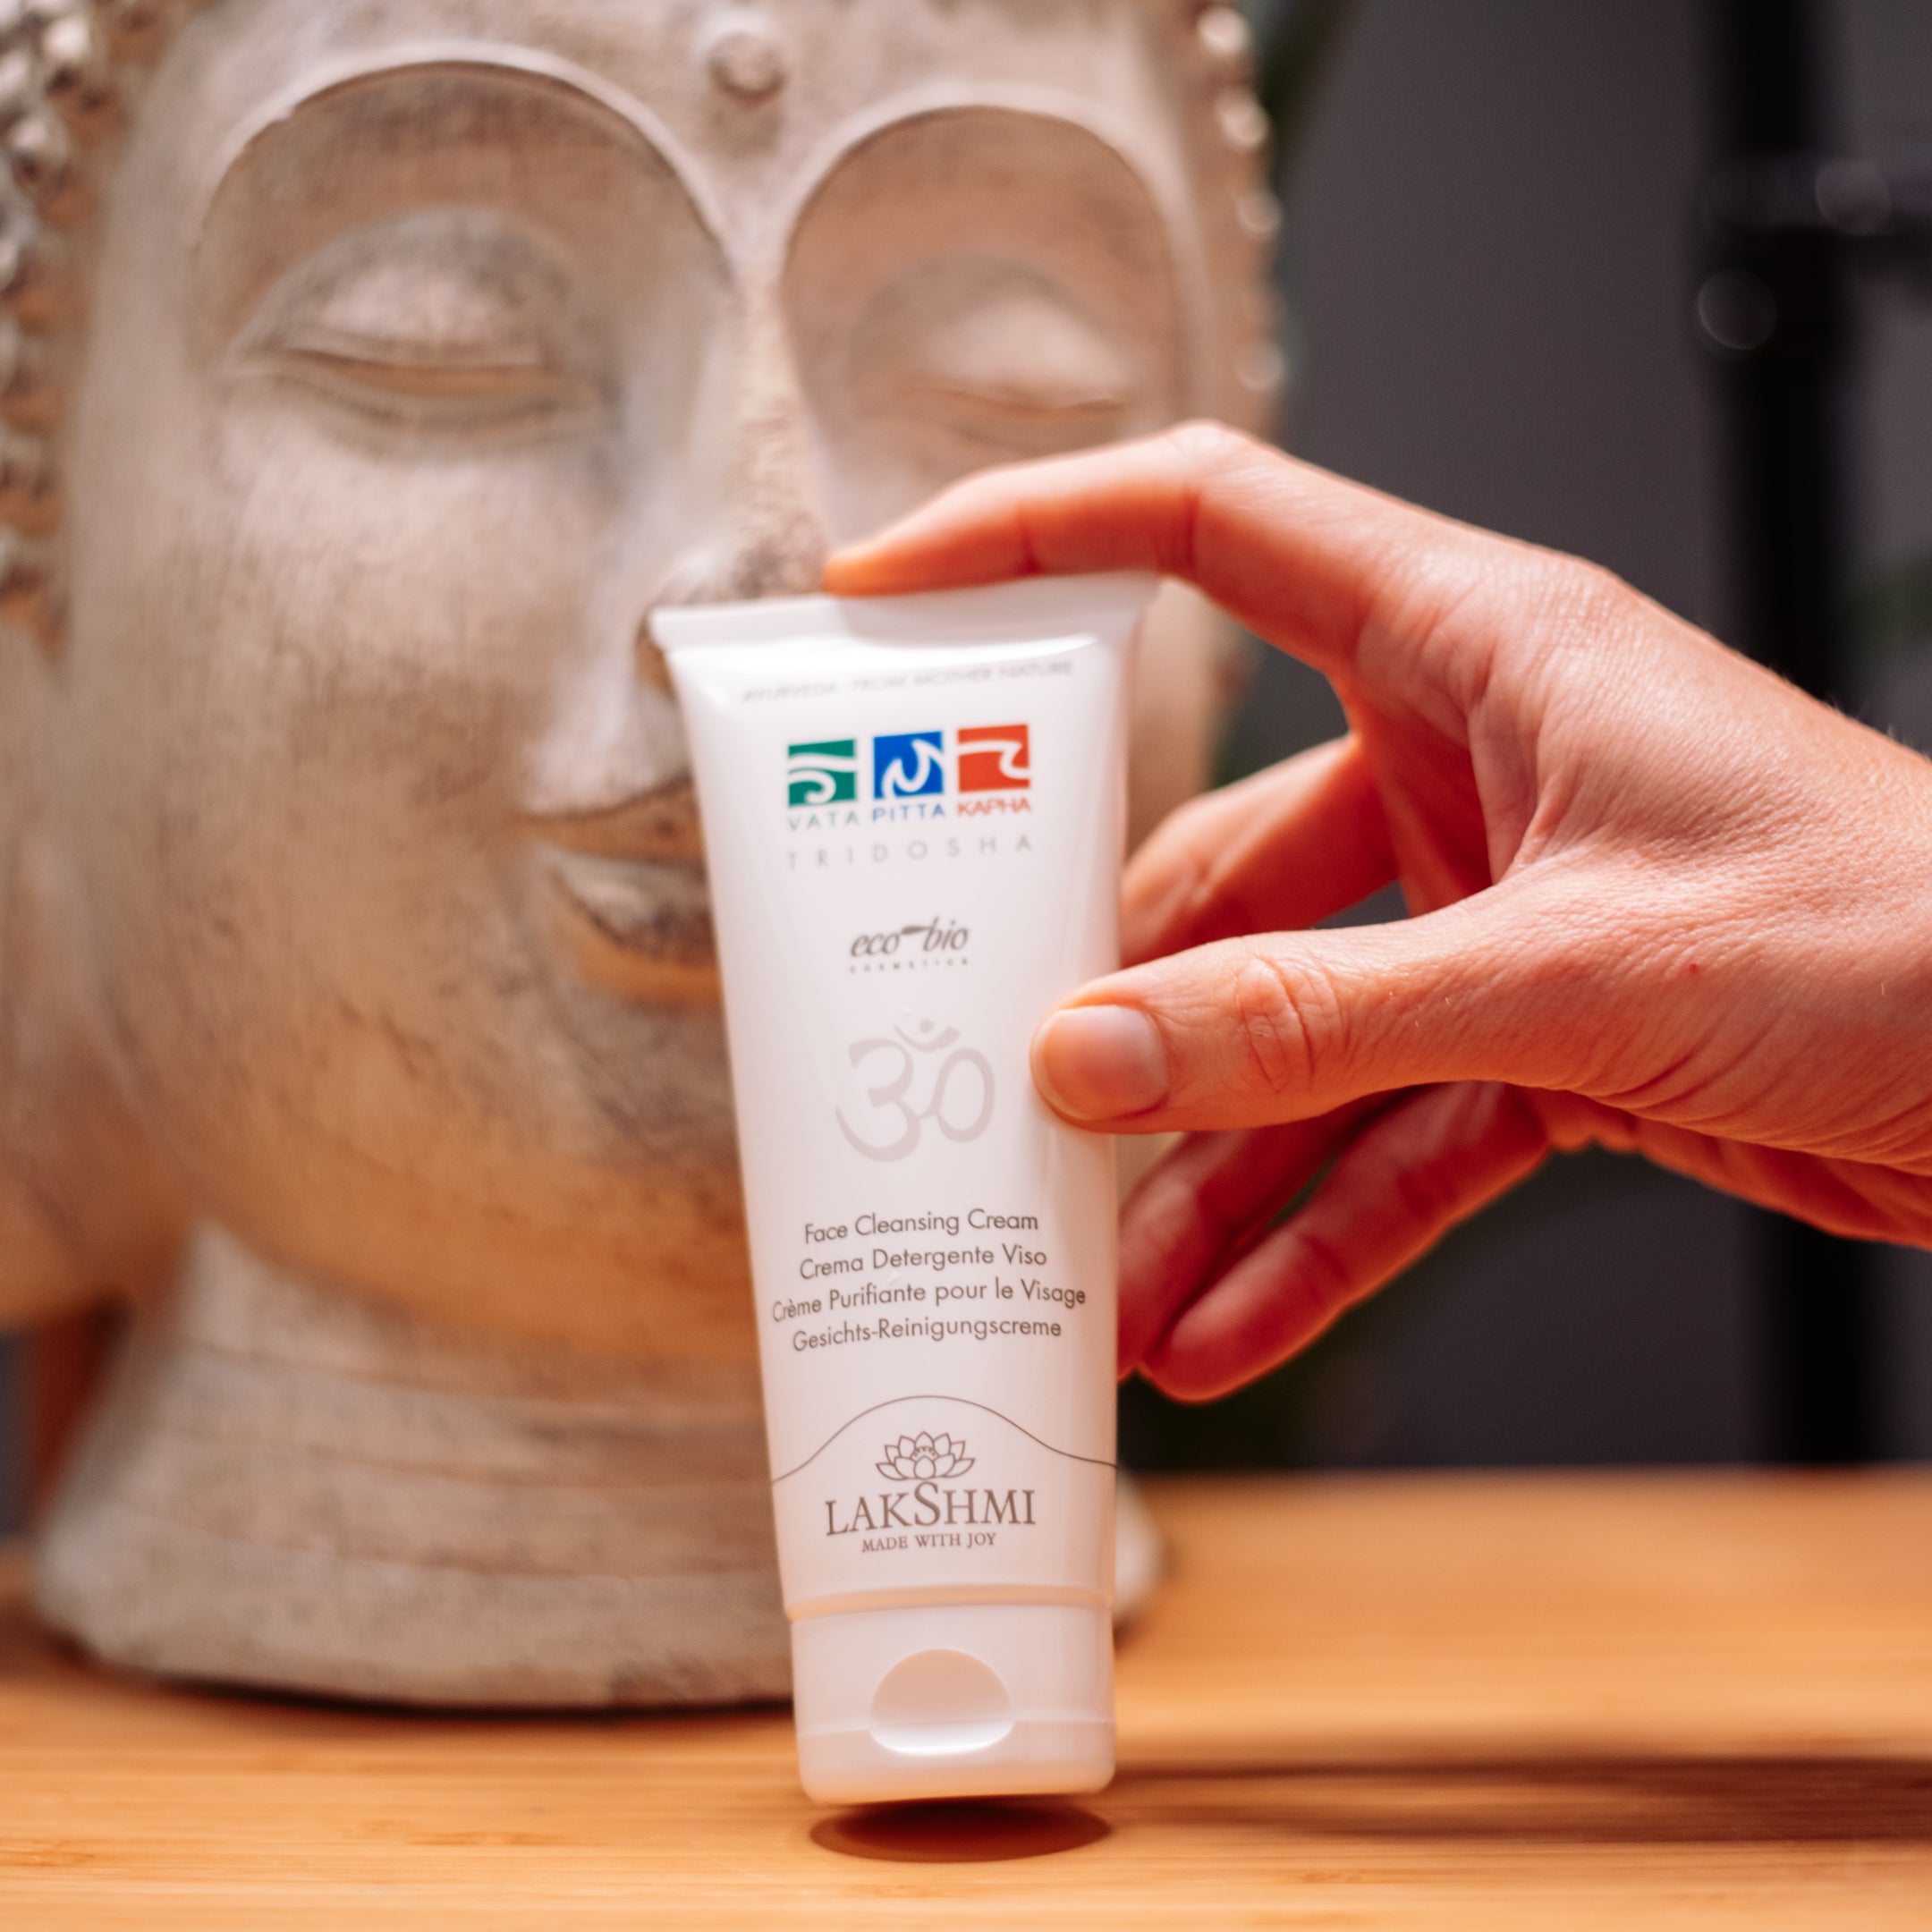 Tridosha Face Cleansing Cream